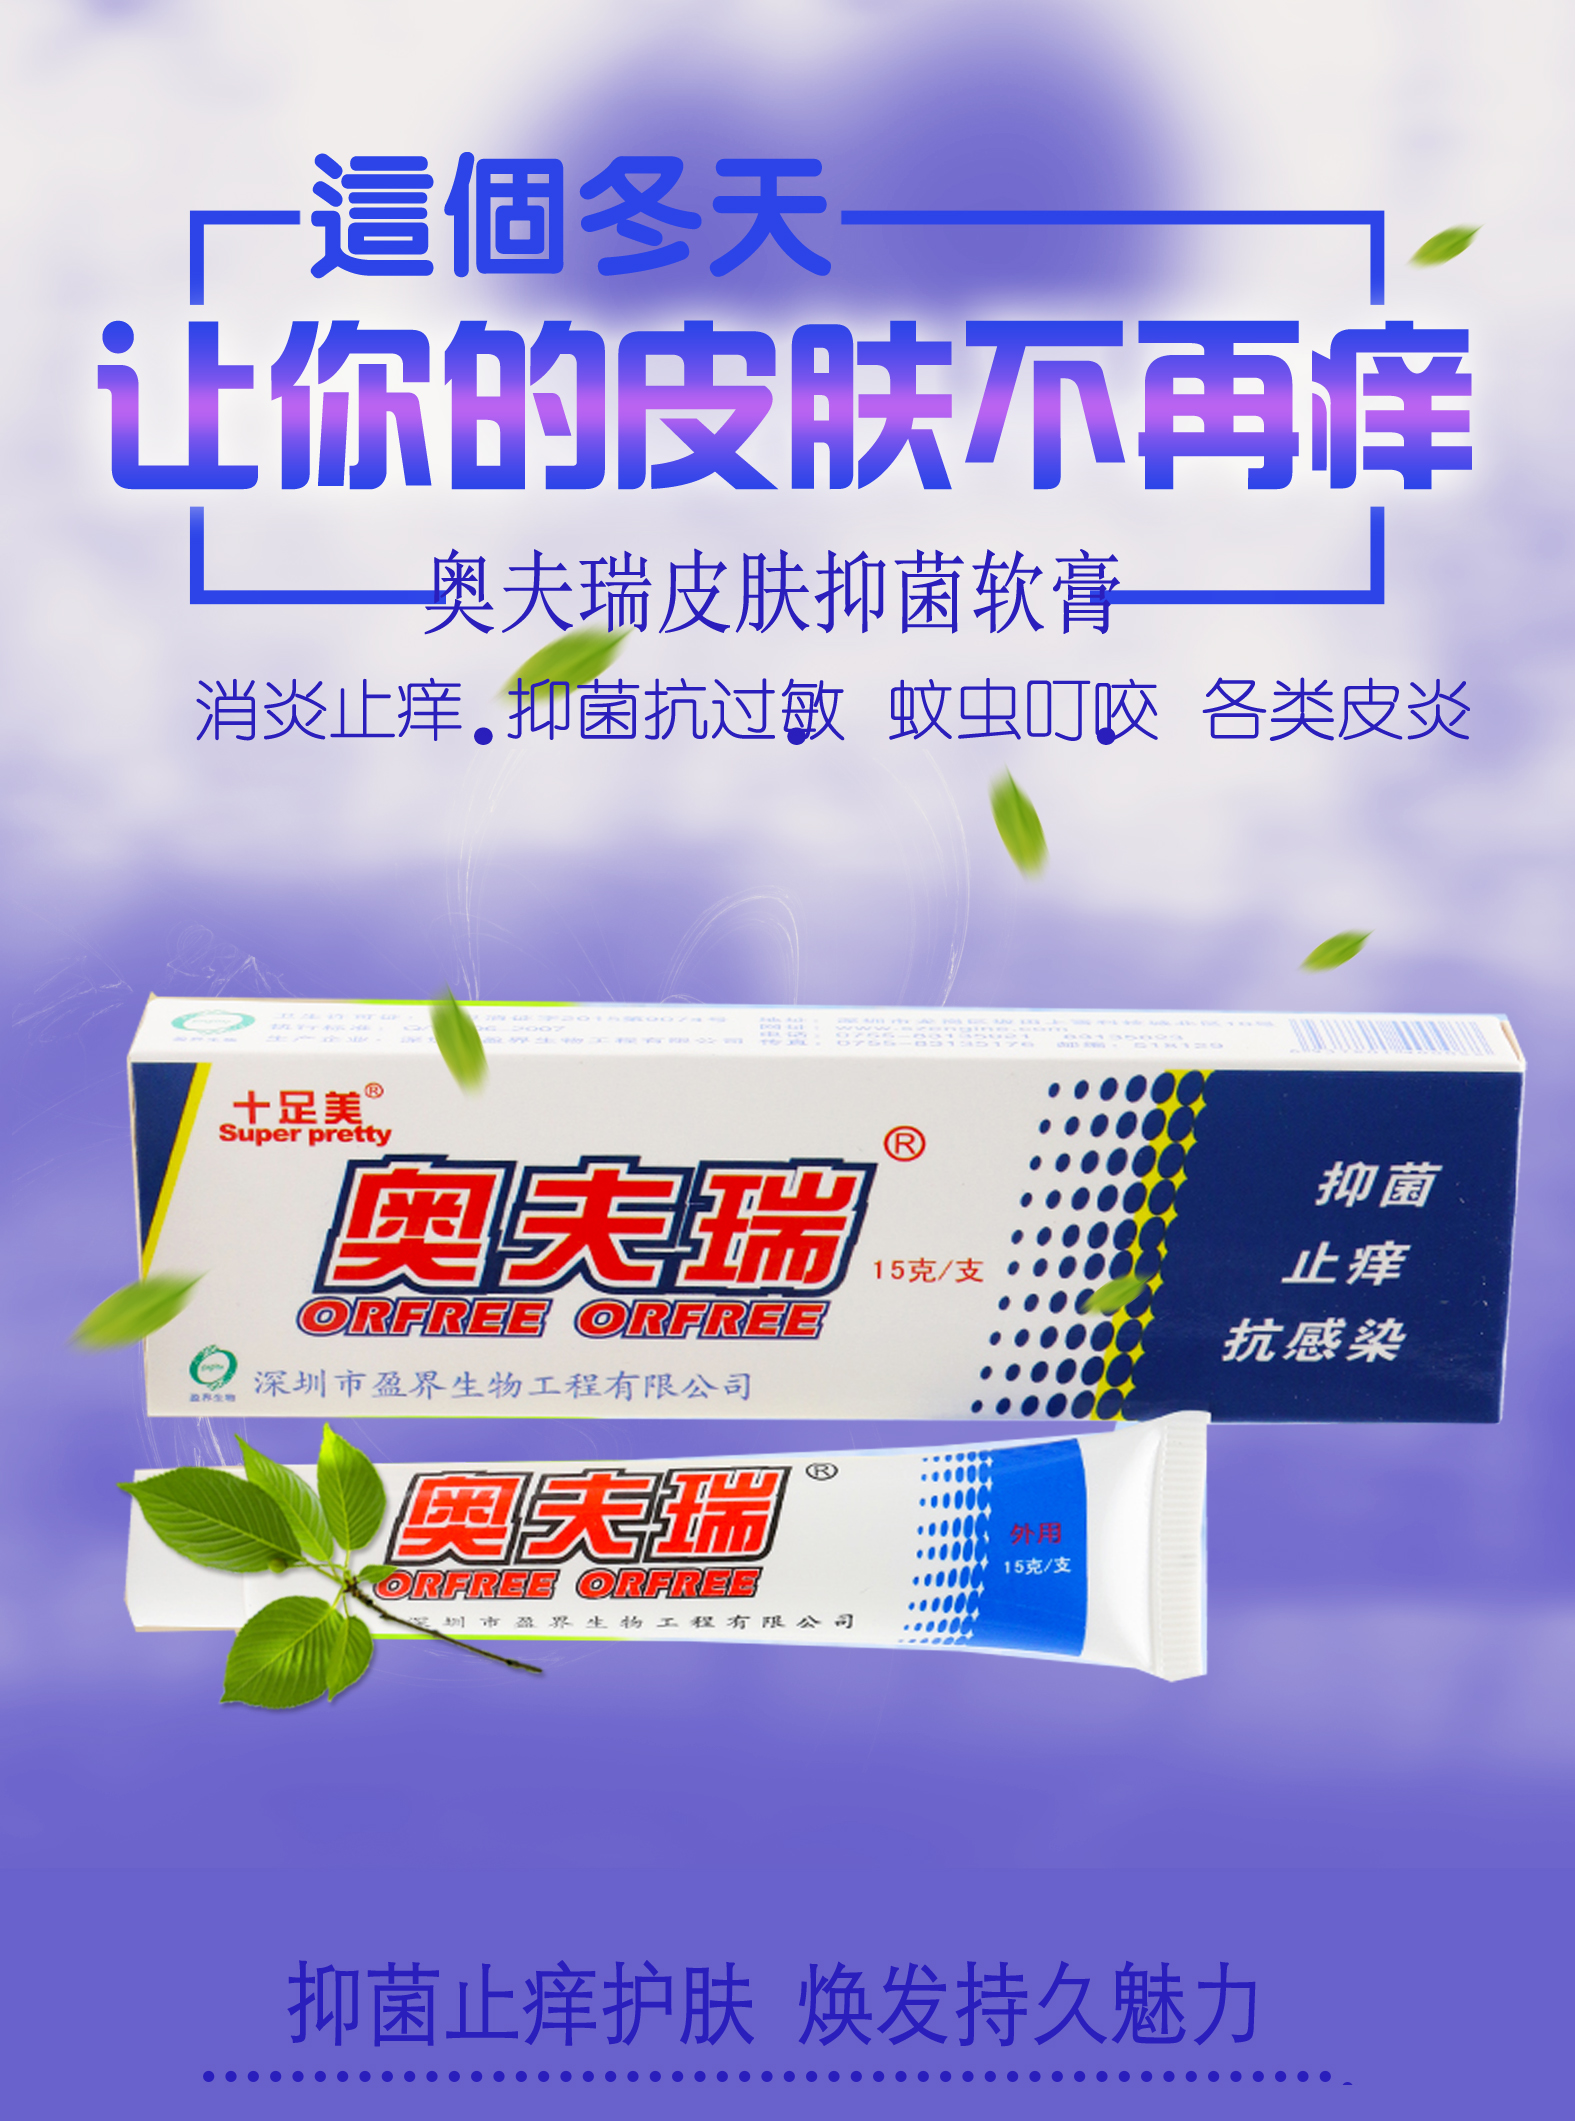 龙珠软膏(25克)-产品与服务-产品详情-马应龙药业集团官网